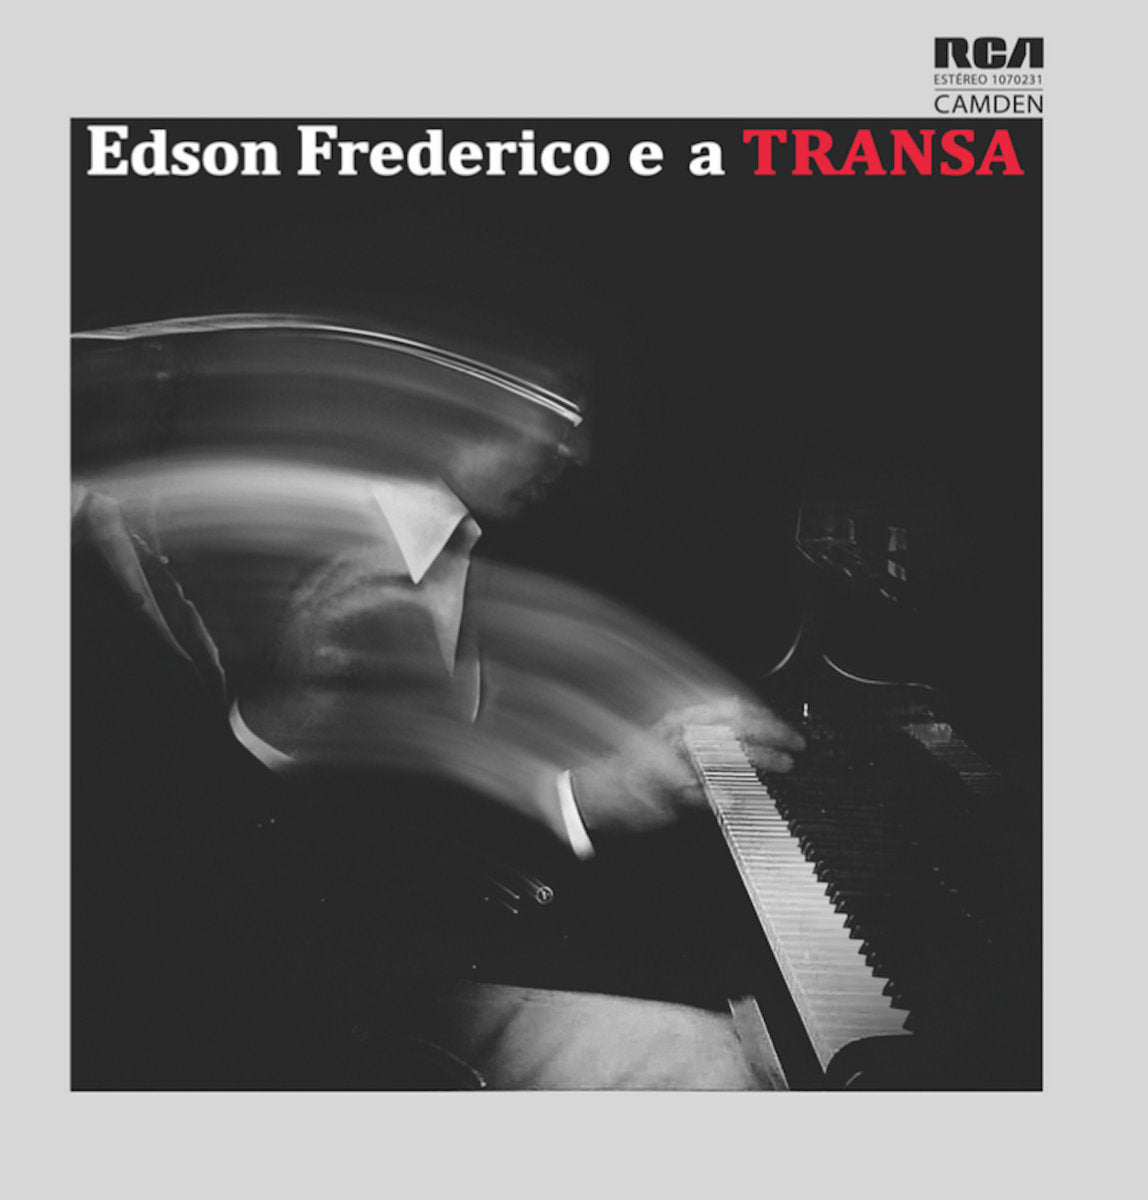 EDSON FREDERICO E A TRANSA